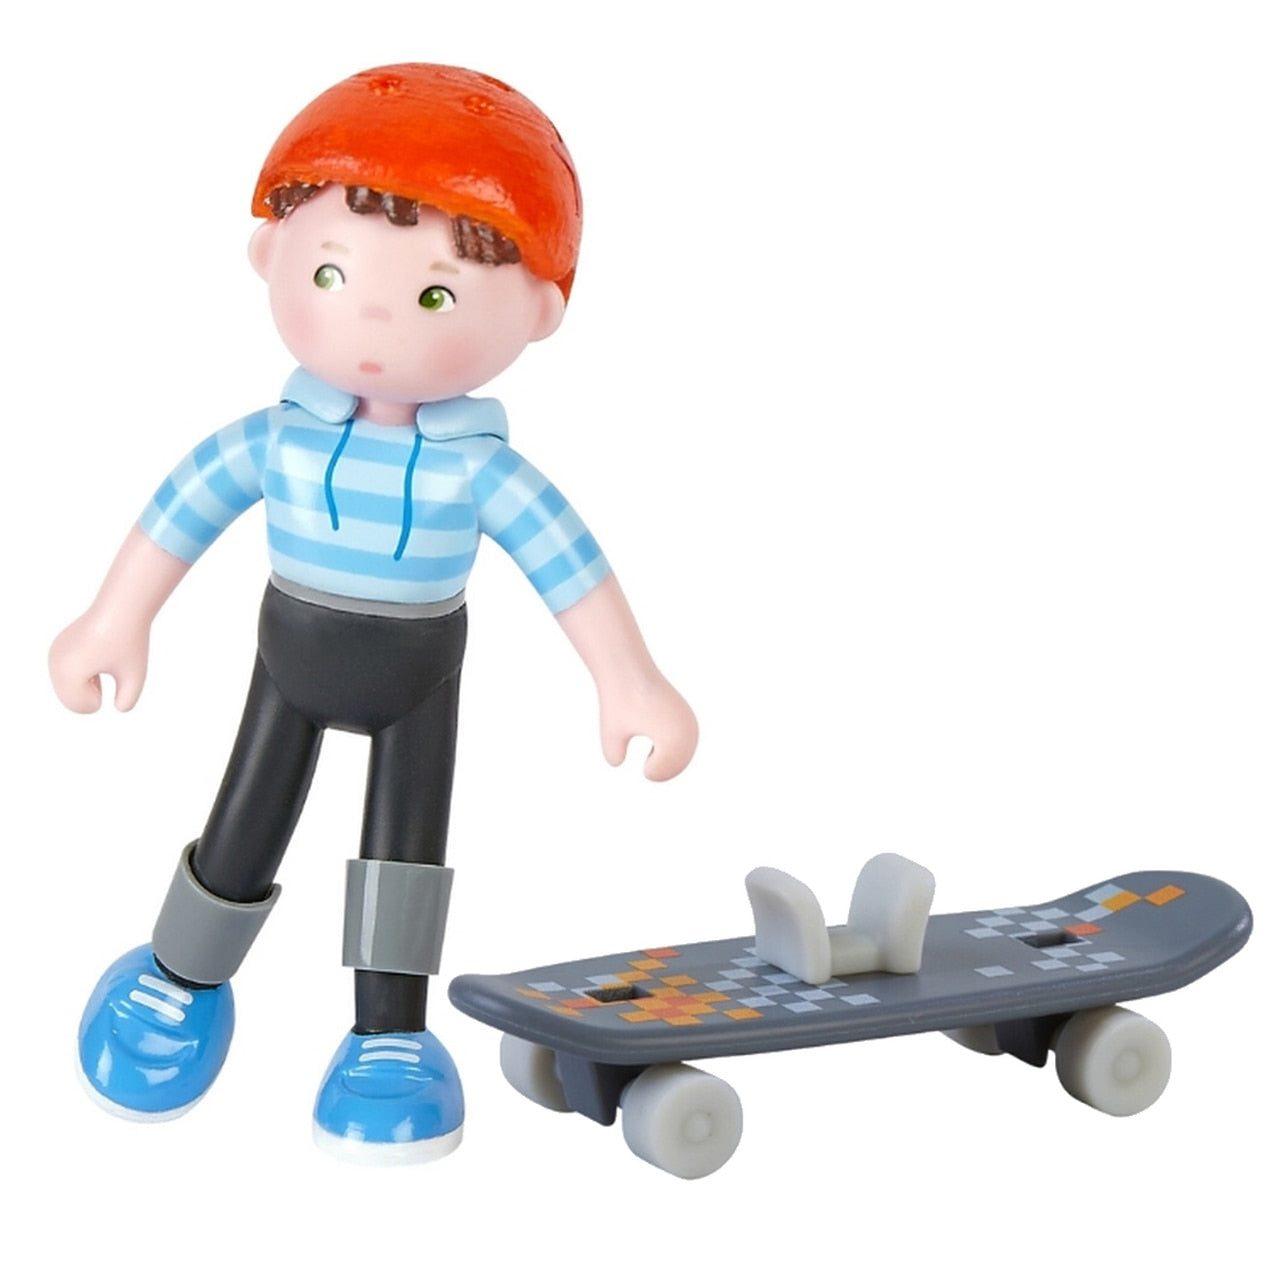 Little Friends: Marc the Skateboarder